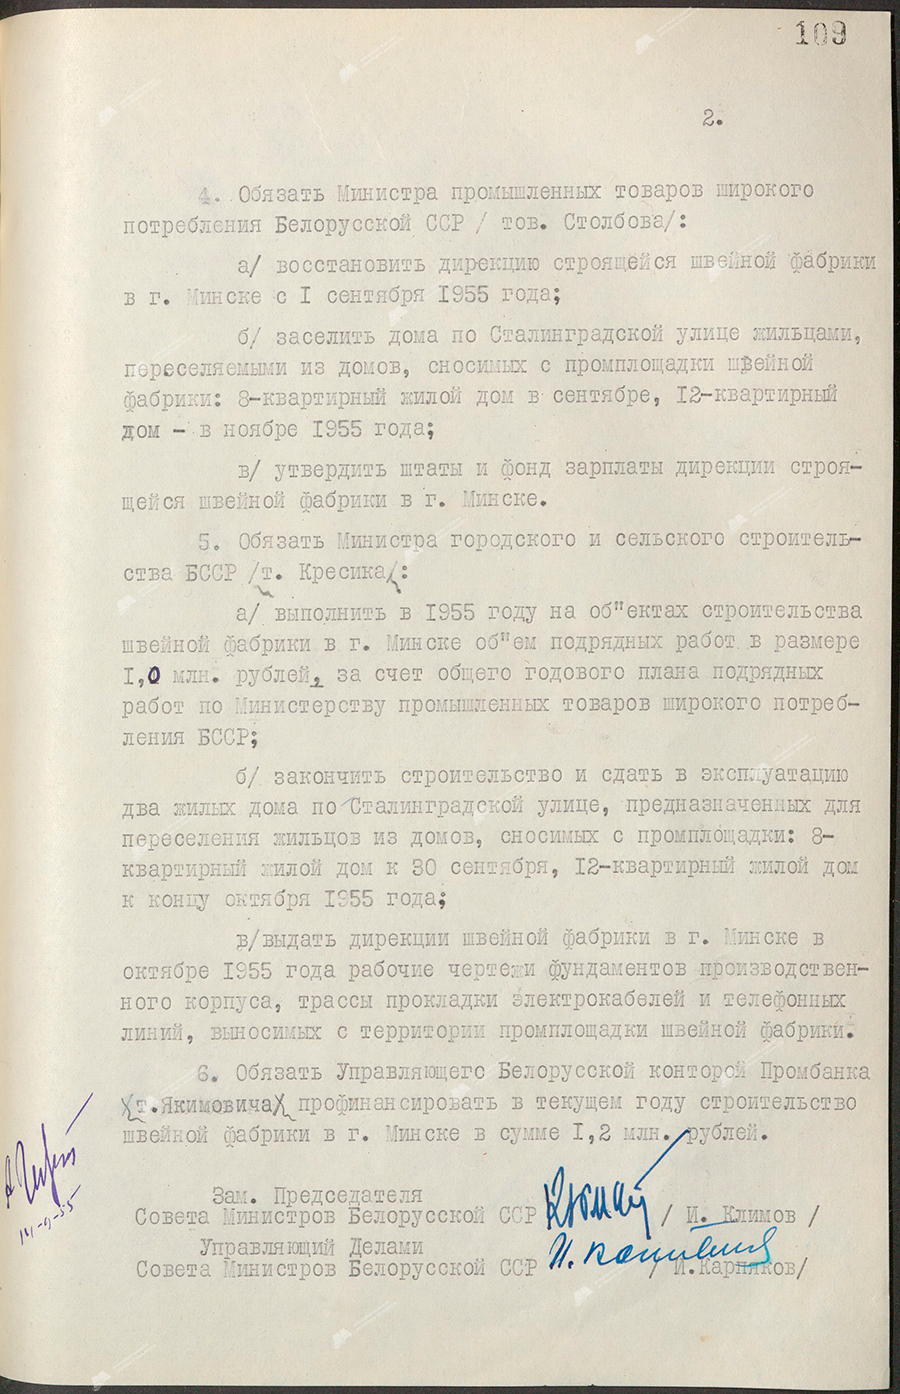 Beschluss Nr. 512 des Ministerrats der Weißrussischen SSR «Über die Genehmigung eines umfassenden Projektauftrags für den Bau einer Bekleidungsfabrik in Minsk»-с. 1